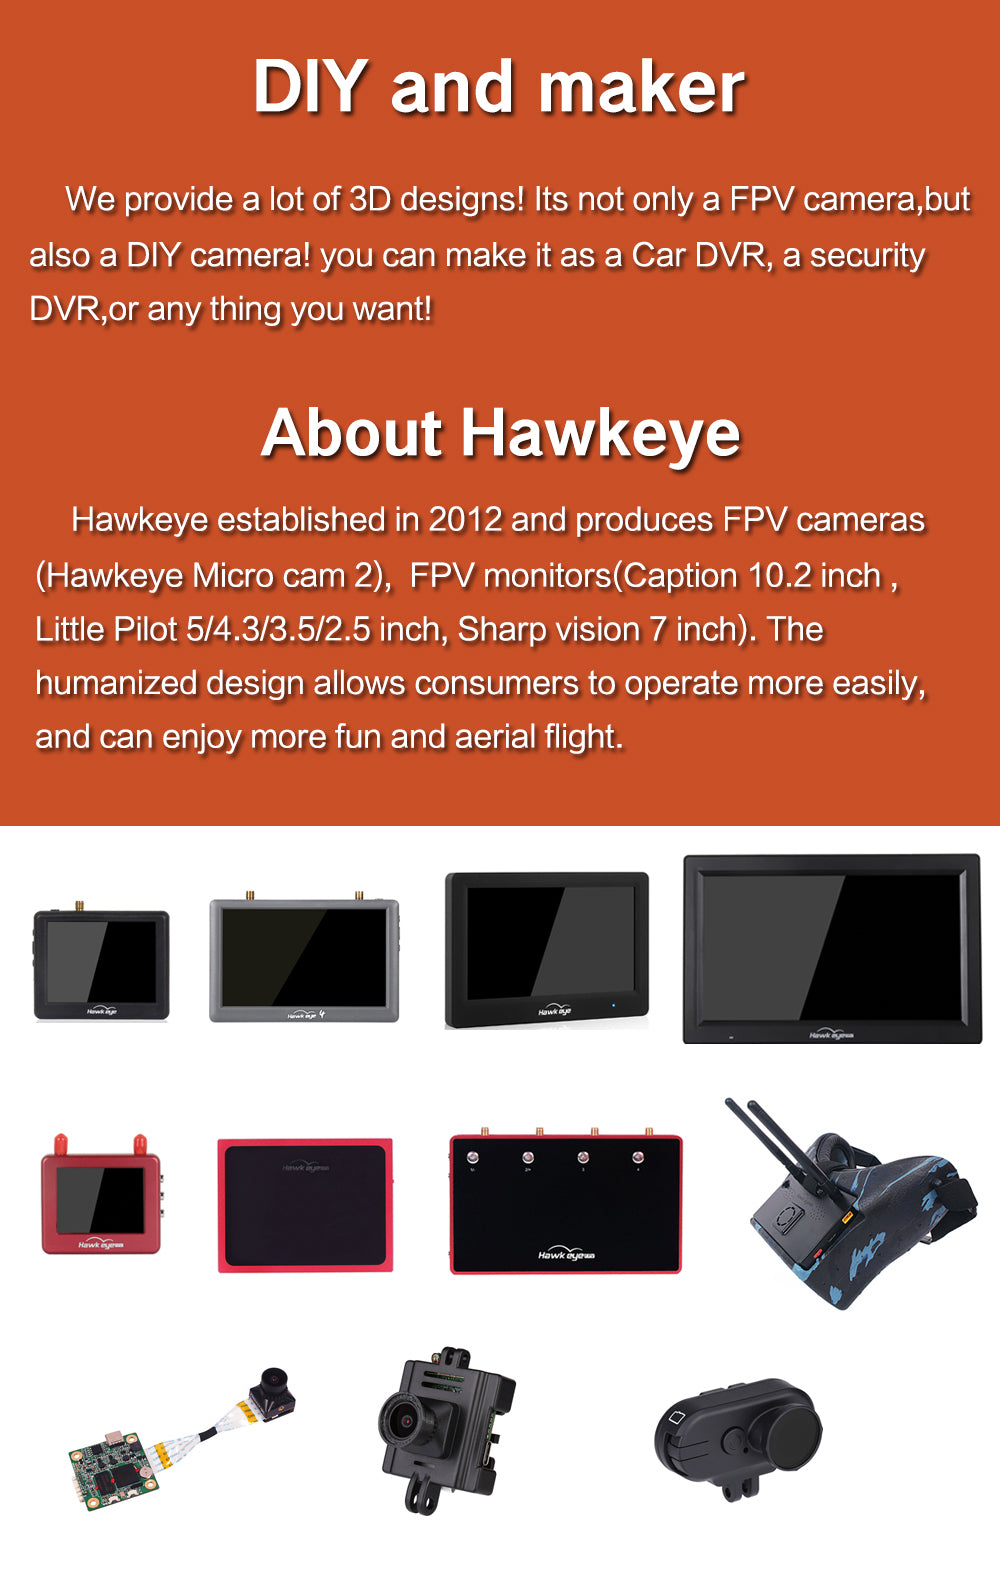 Hawkeye Thumb 4K HD FPV Camera j